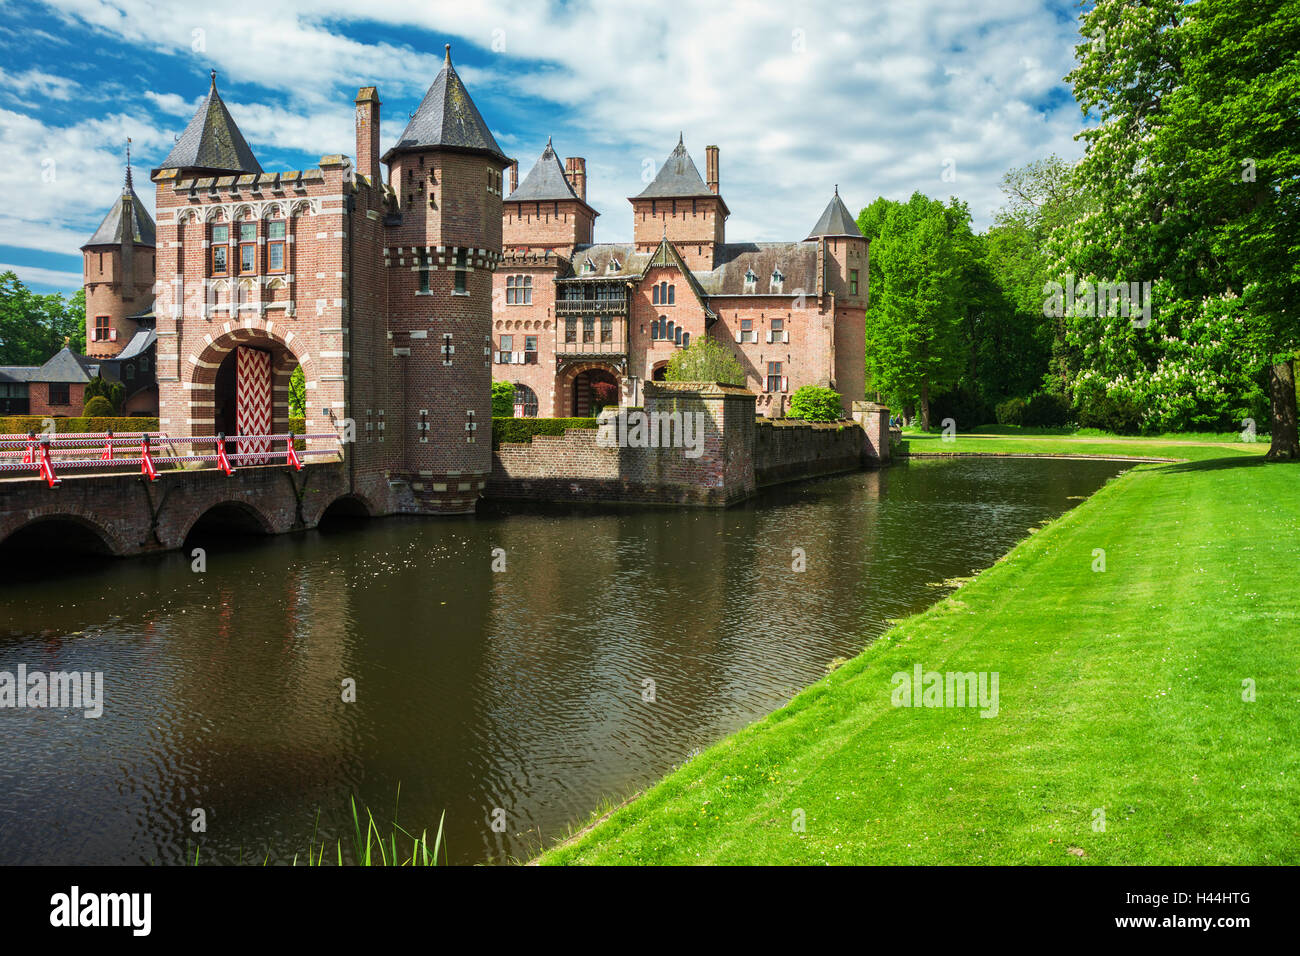 HAARZUILENS, NETHERLANDS - May 18, 2012: Castle de Haar Stock Photo